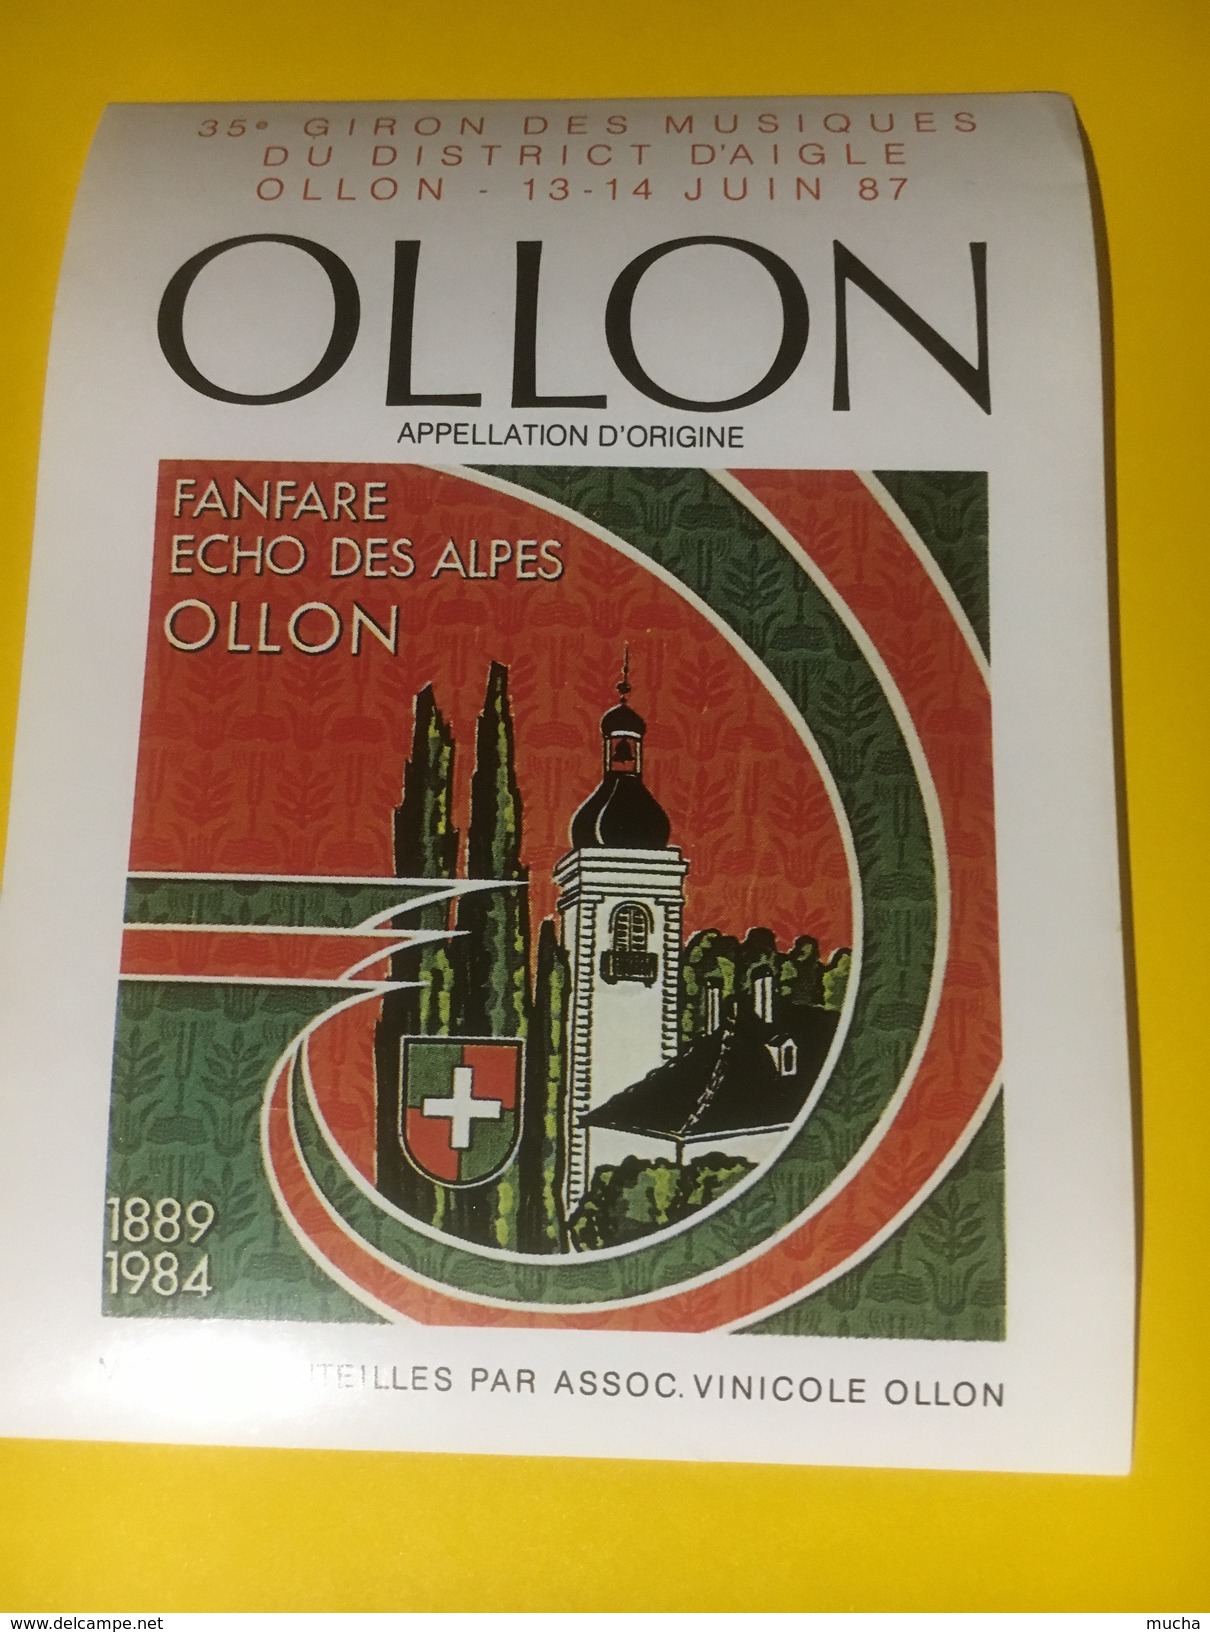 3226 - Suisse Vaud Ollon Fanfare Echo Des Alpes 35e Giron Des Musiques Du District D'AIgle 1987 - Musique